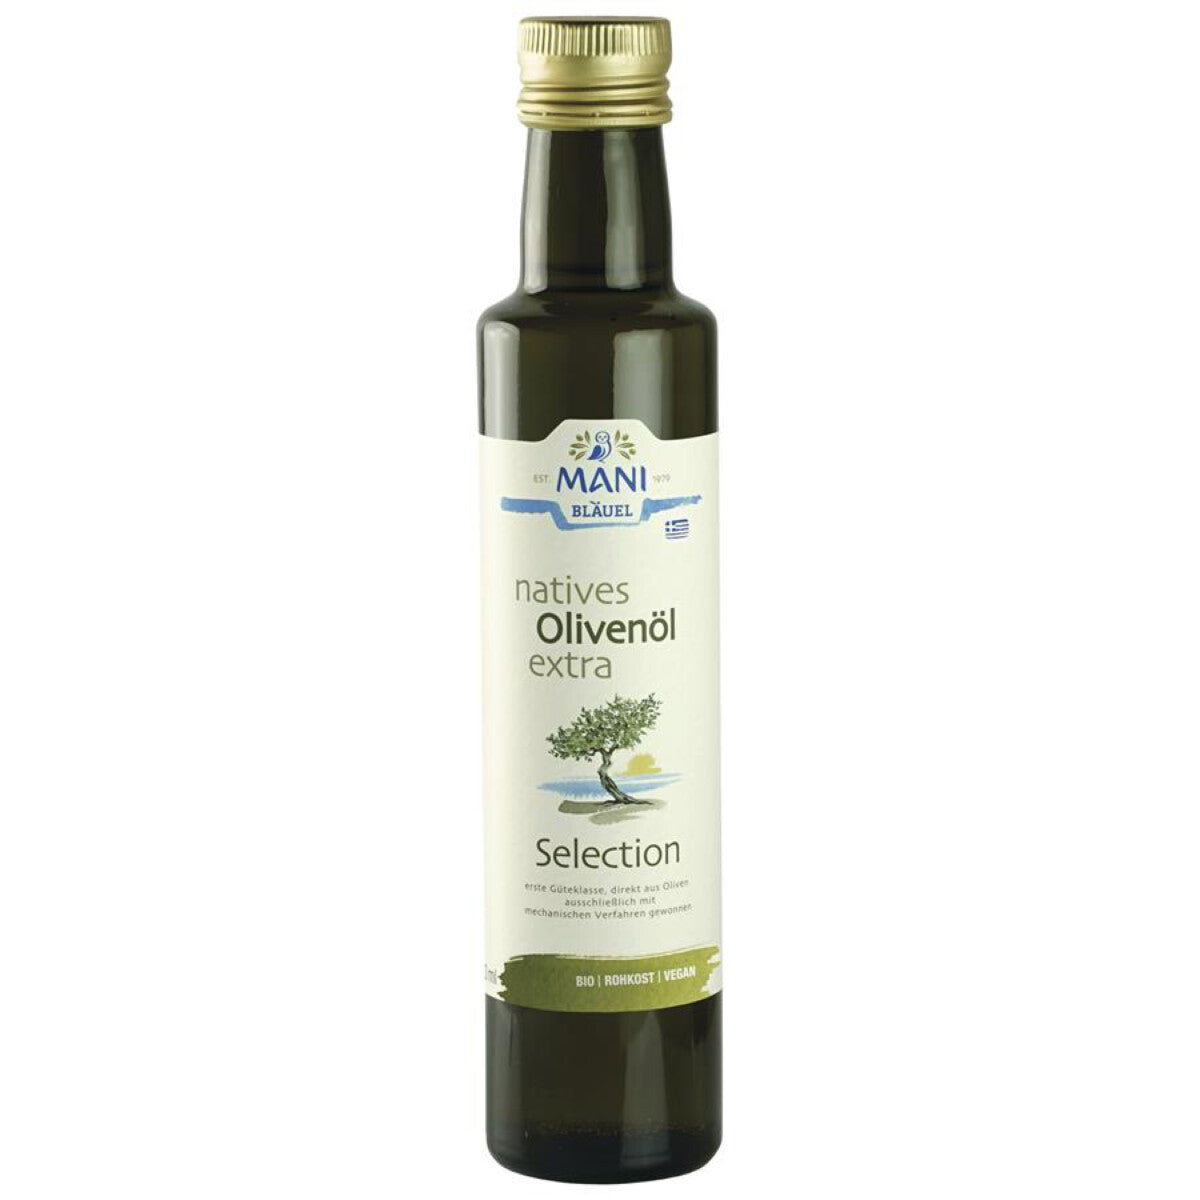 MANI BLÄUEL Olivenöl Selection nativ extra - 0,25 l